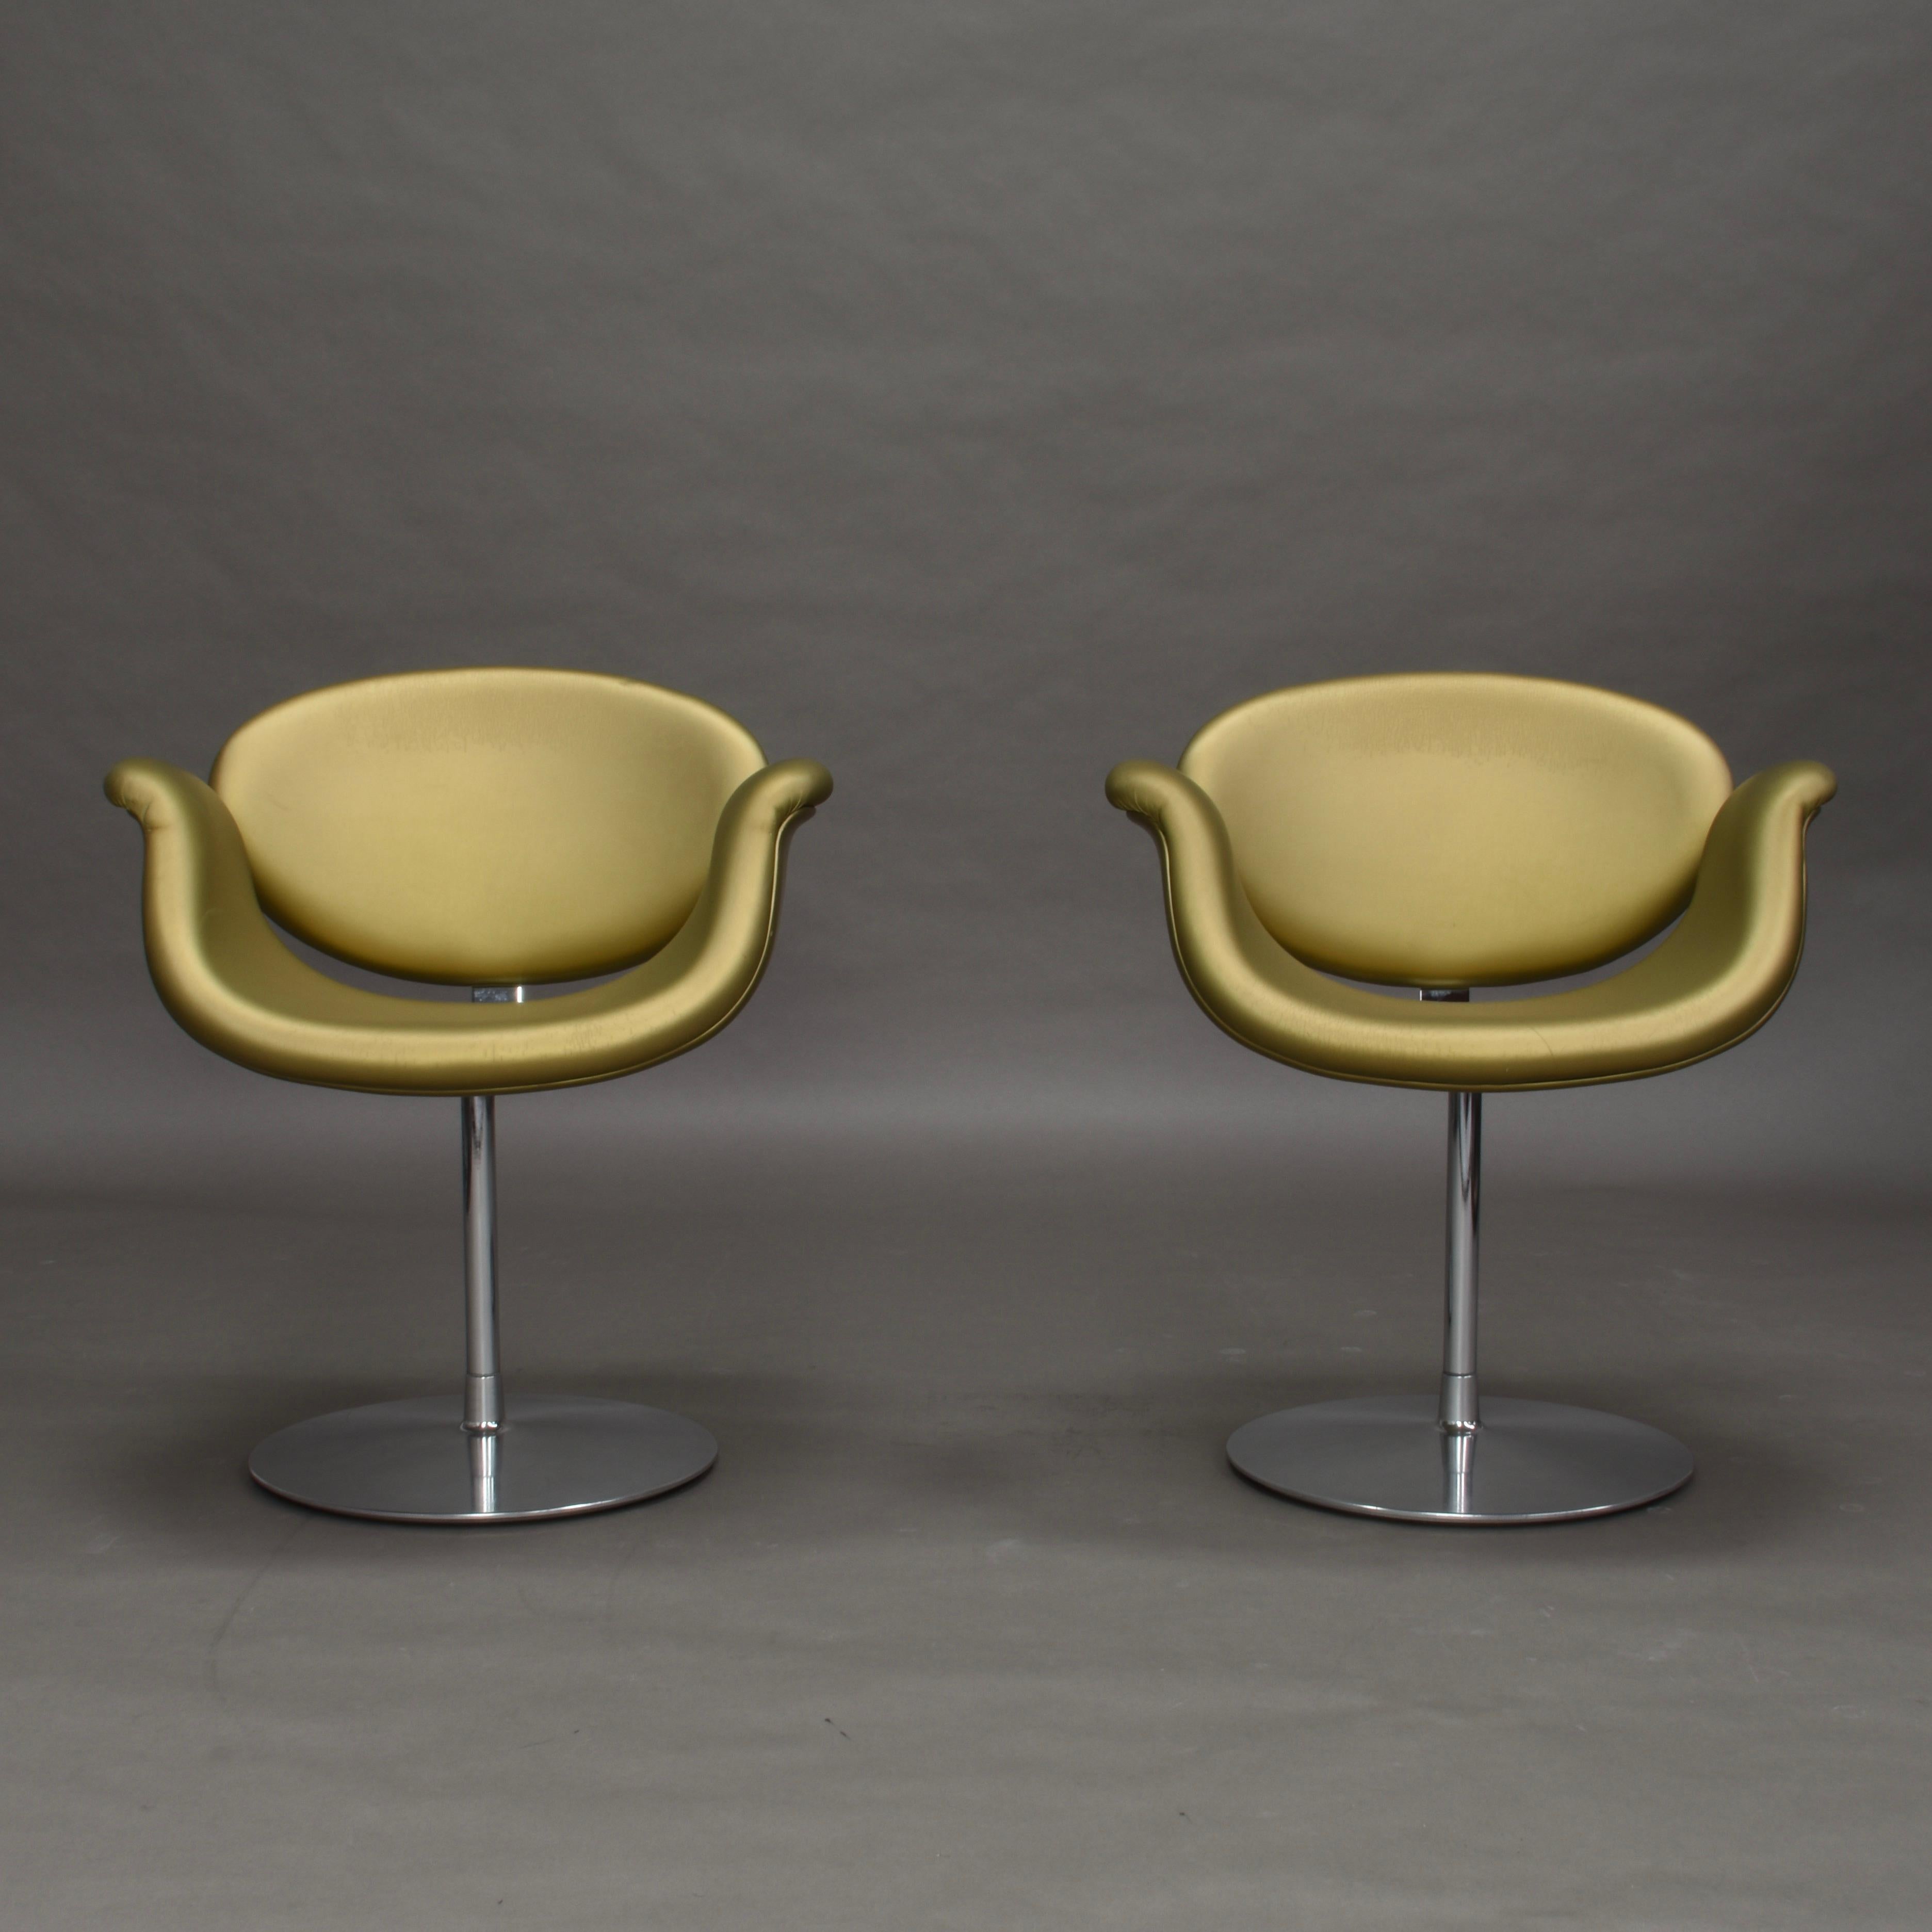 Paar Drehstühle Little Tulip, limitierte Auflage, von Pierre Paulin für Artifort, Niederlande, 1965.

Die Stühle werden in einer limitierten Auflage in goldenem Kunstleder hergestellt. Der drehbare Fuß ist aus verchromtem Metall. Das Kunstleder